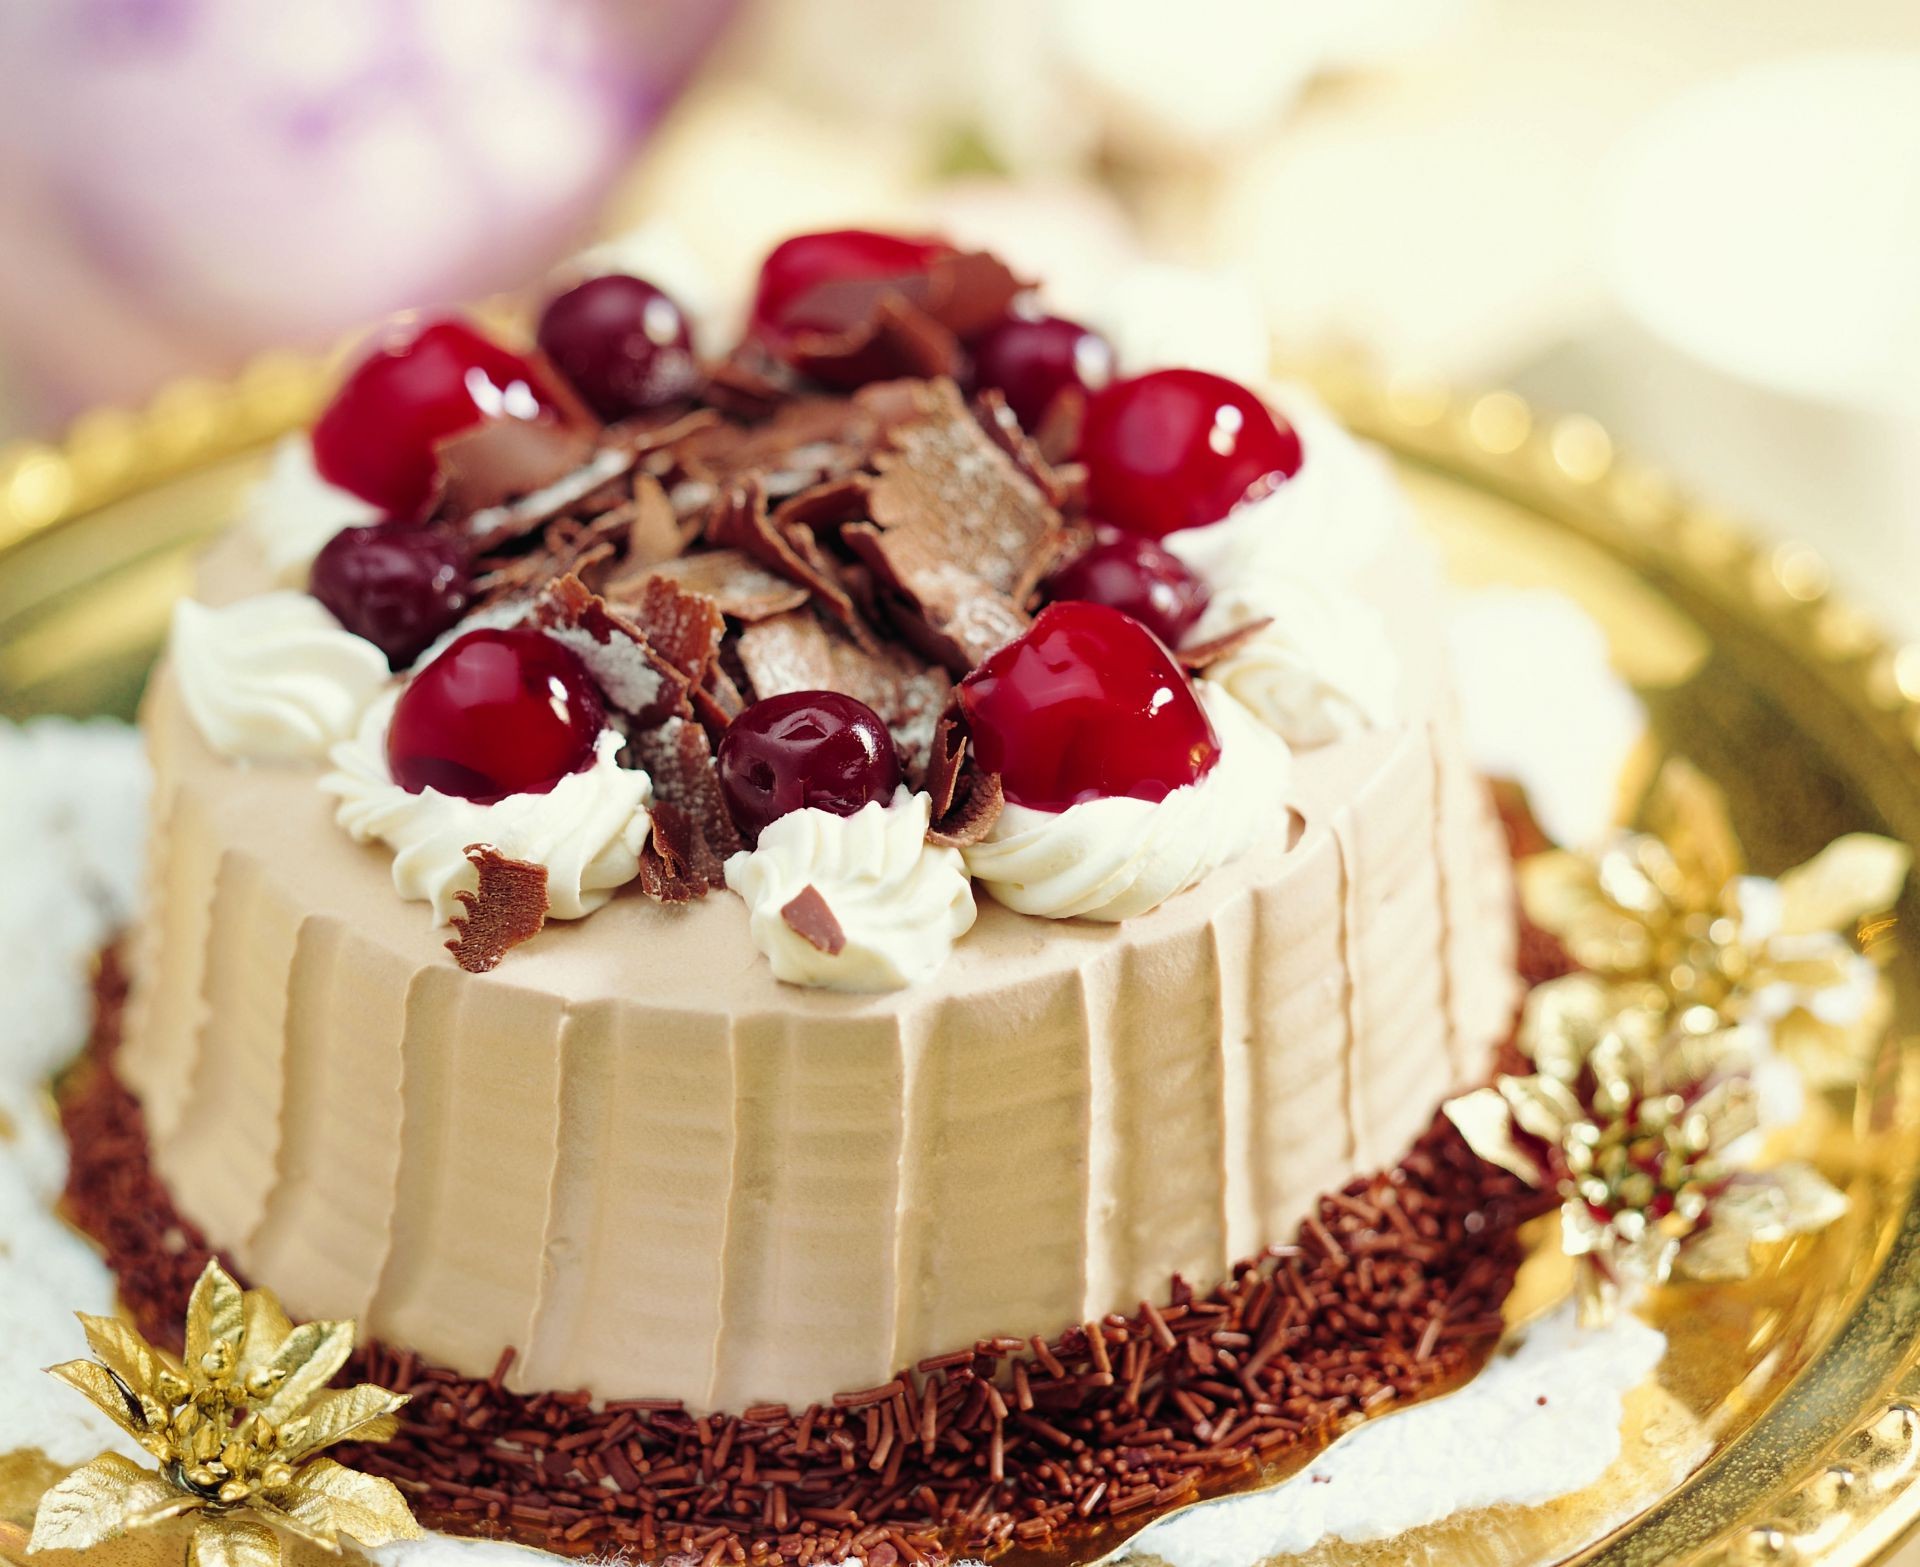 десерты торт крем шоколад сладкий хлебопекарни кондитерский ягодка пирог вкусные сливочный сахар домашние выпечки день рождения гуди индульгенция взбитые сливки заварной крем фрукты